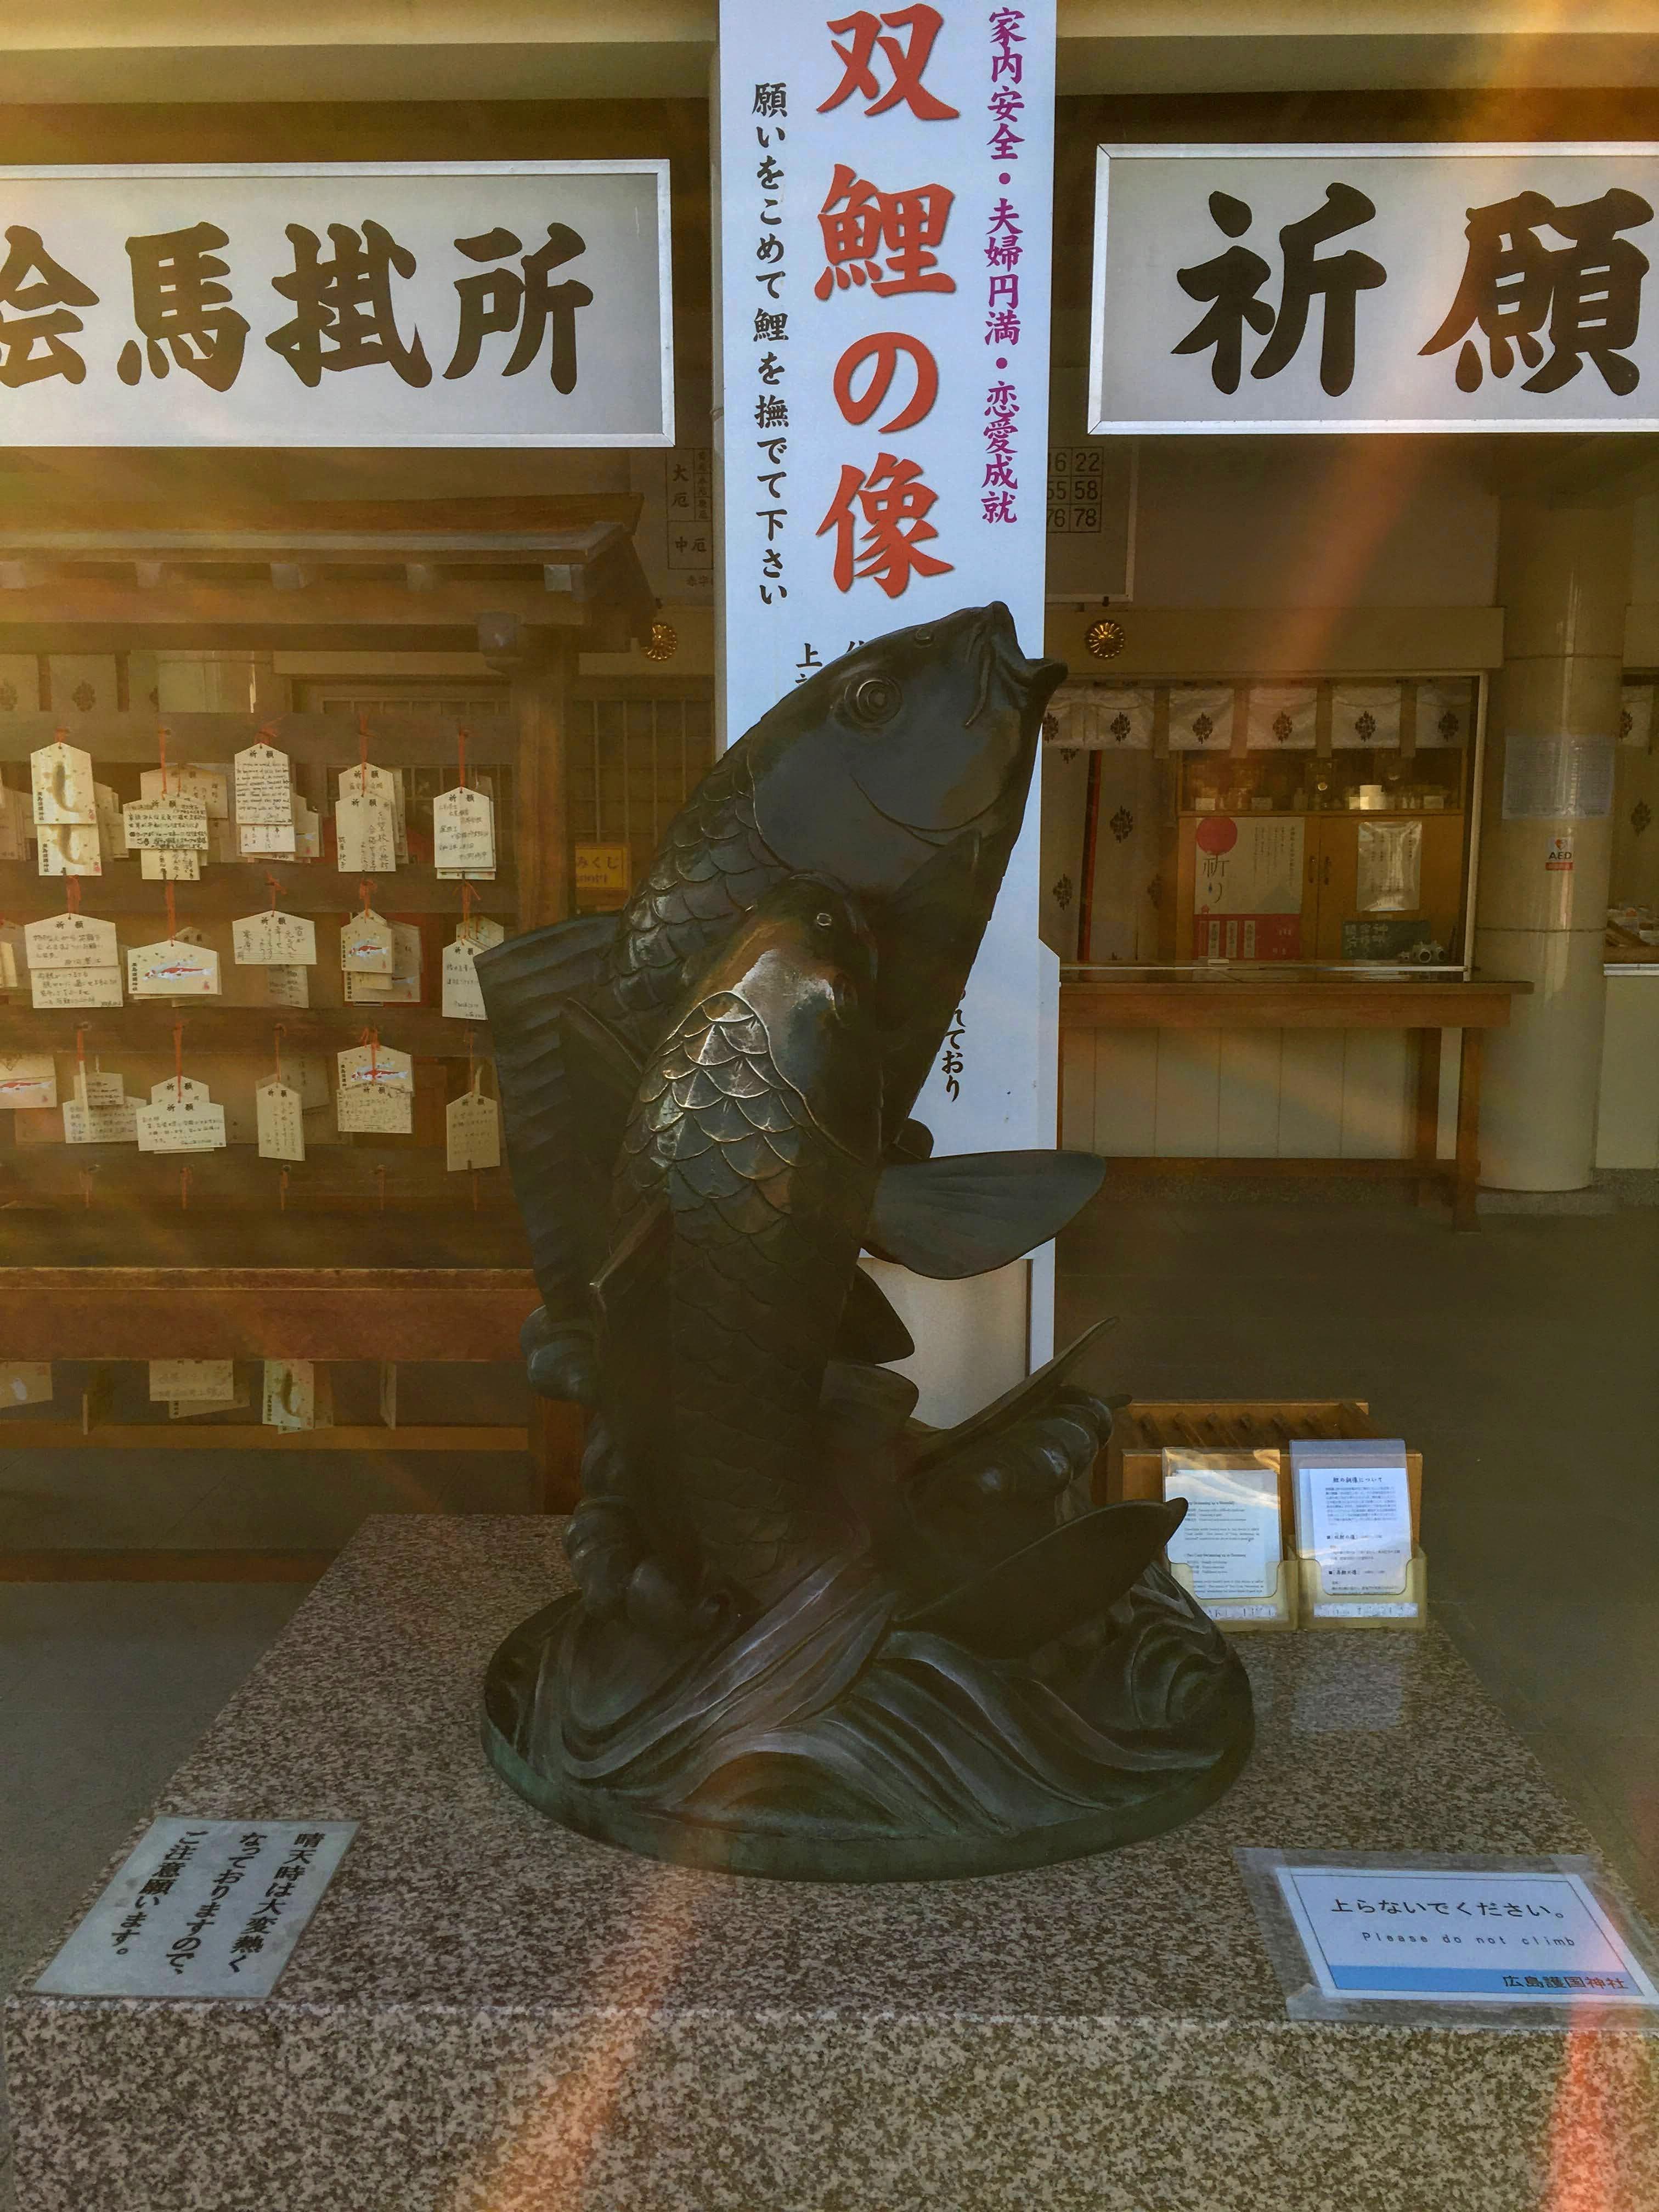 在護國神社內處處可見的鯉魚。